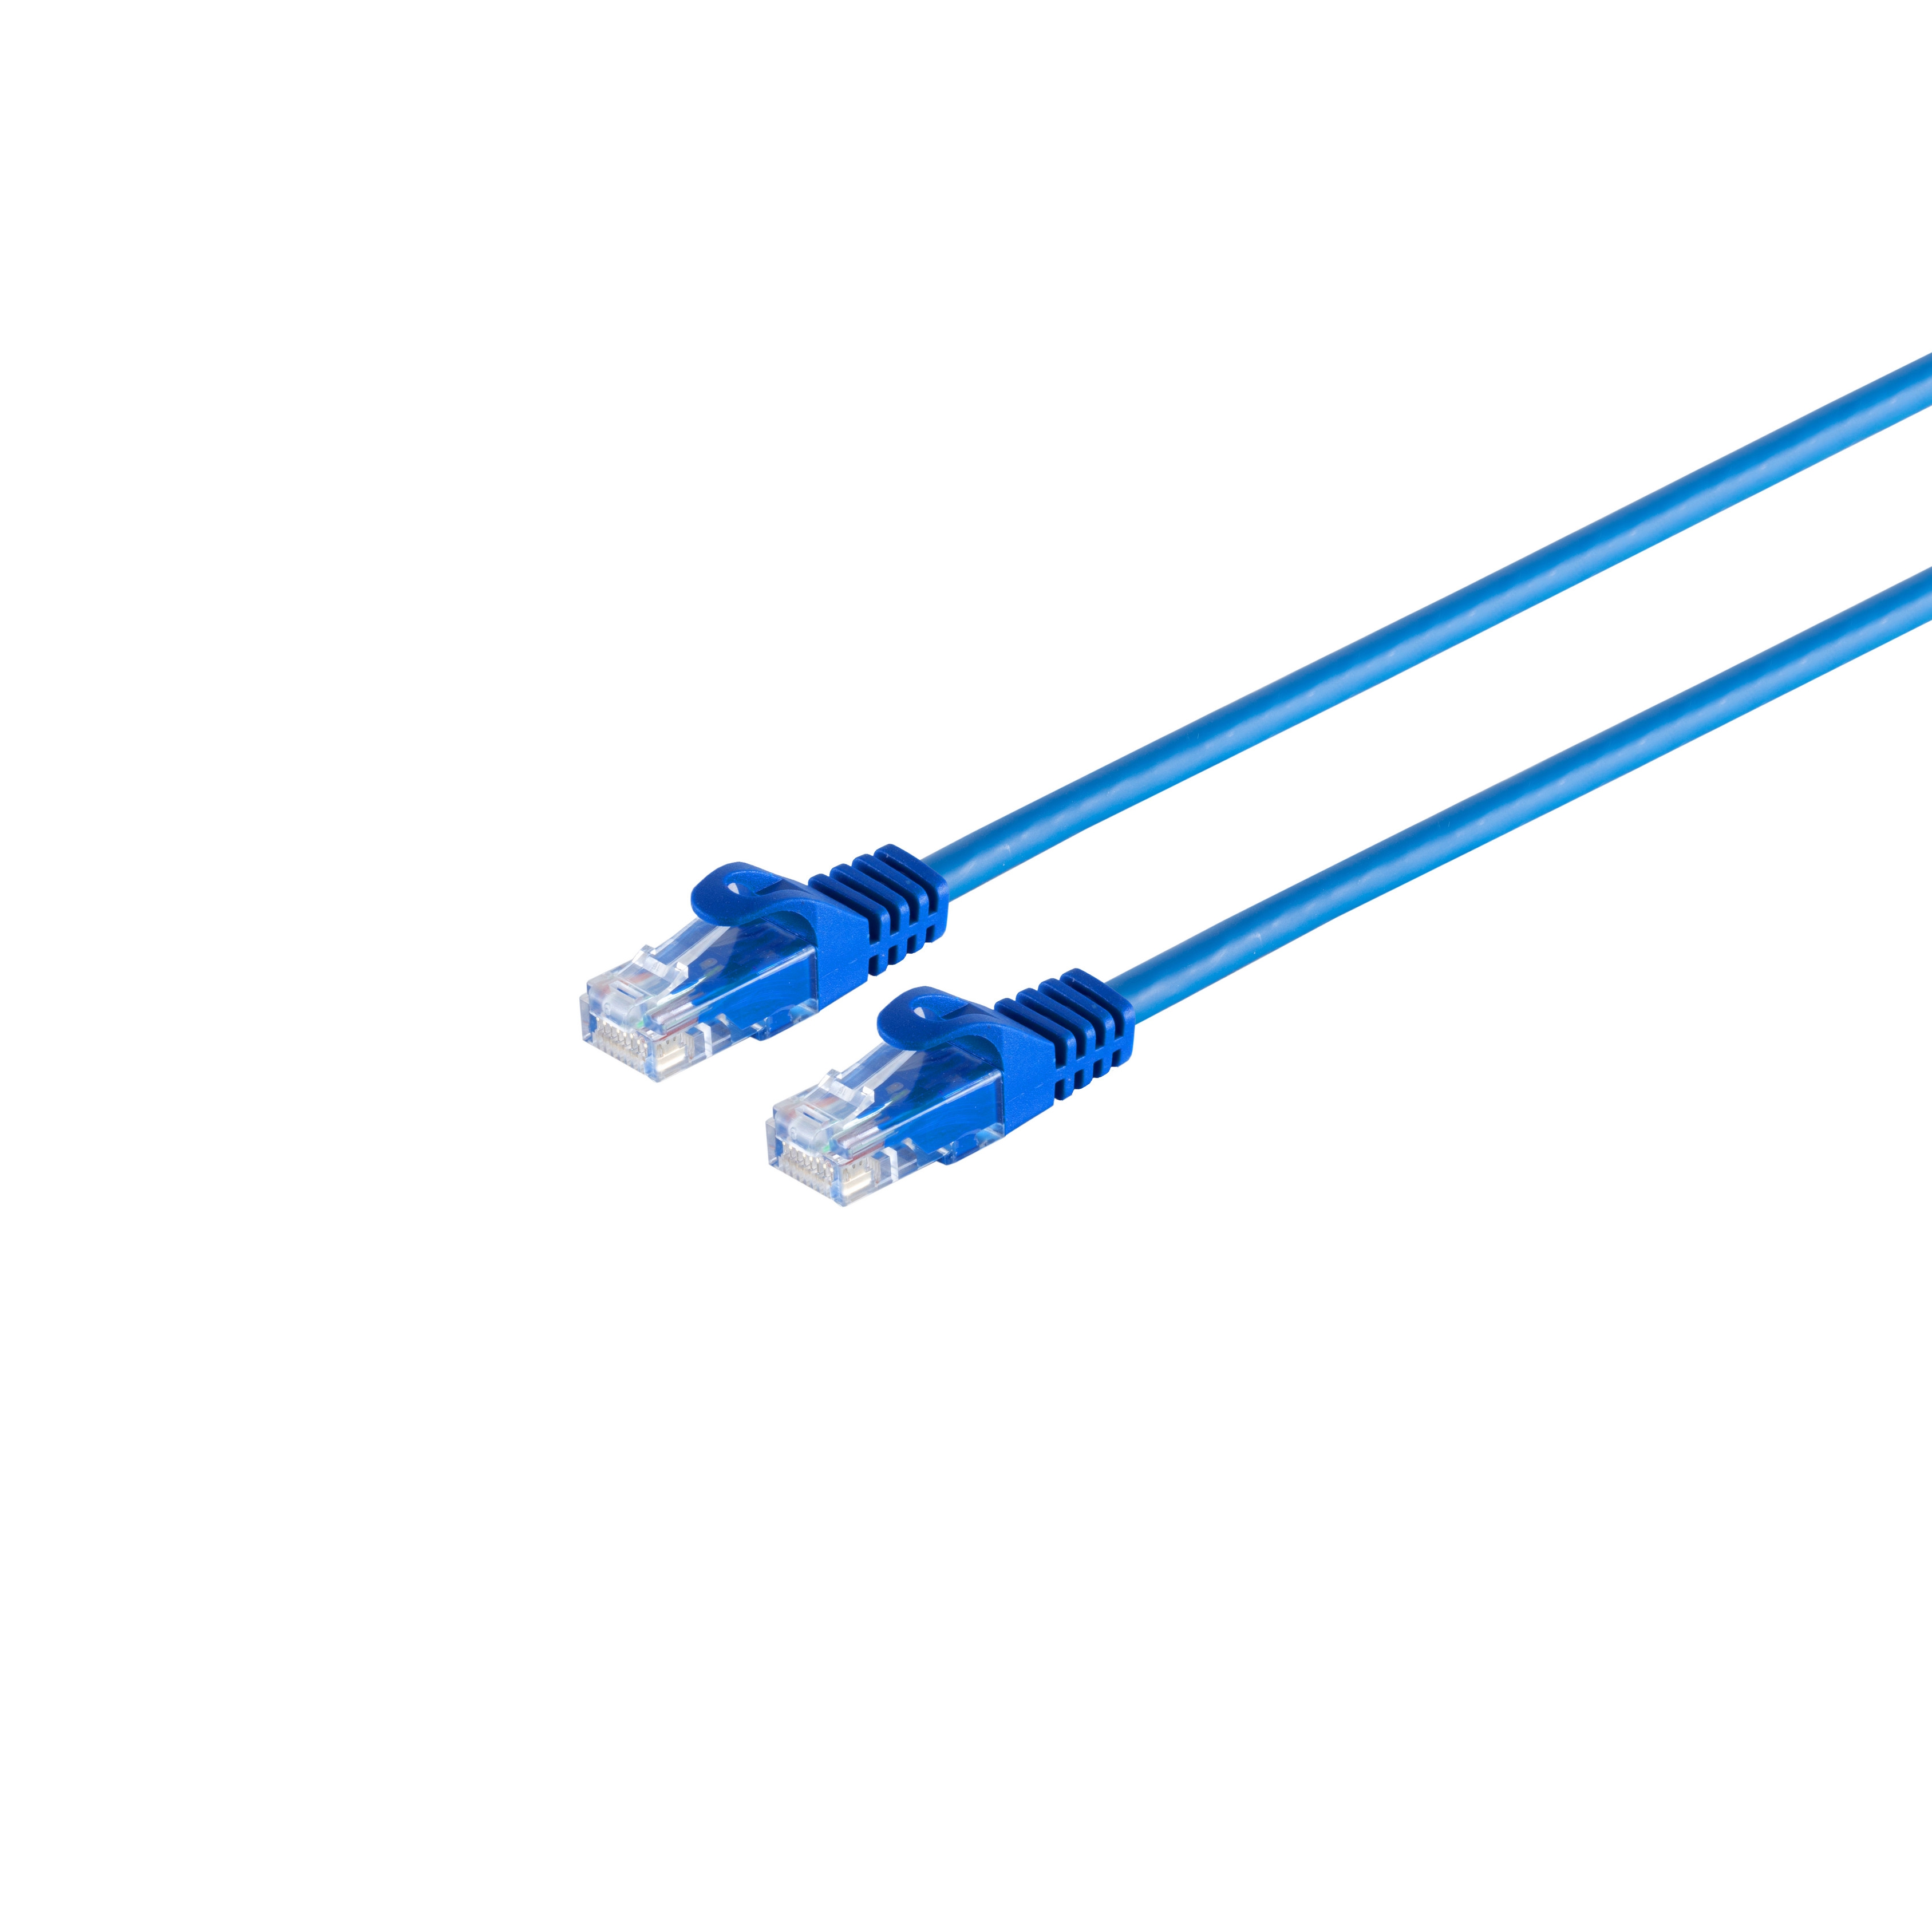 S/CONN MAXIMUM CONNECTIVITY blau CAT Patchkabel Rohkabel 0,25m, m 0,25 RJ45 7 U/UTP Patchkabel RJ45